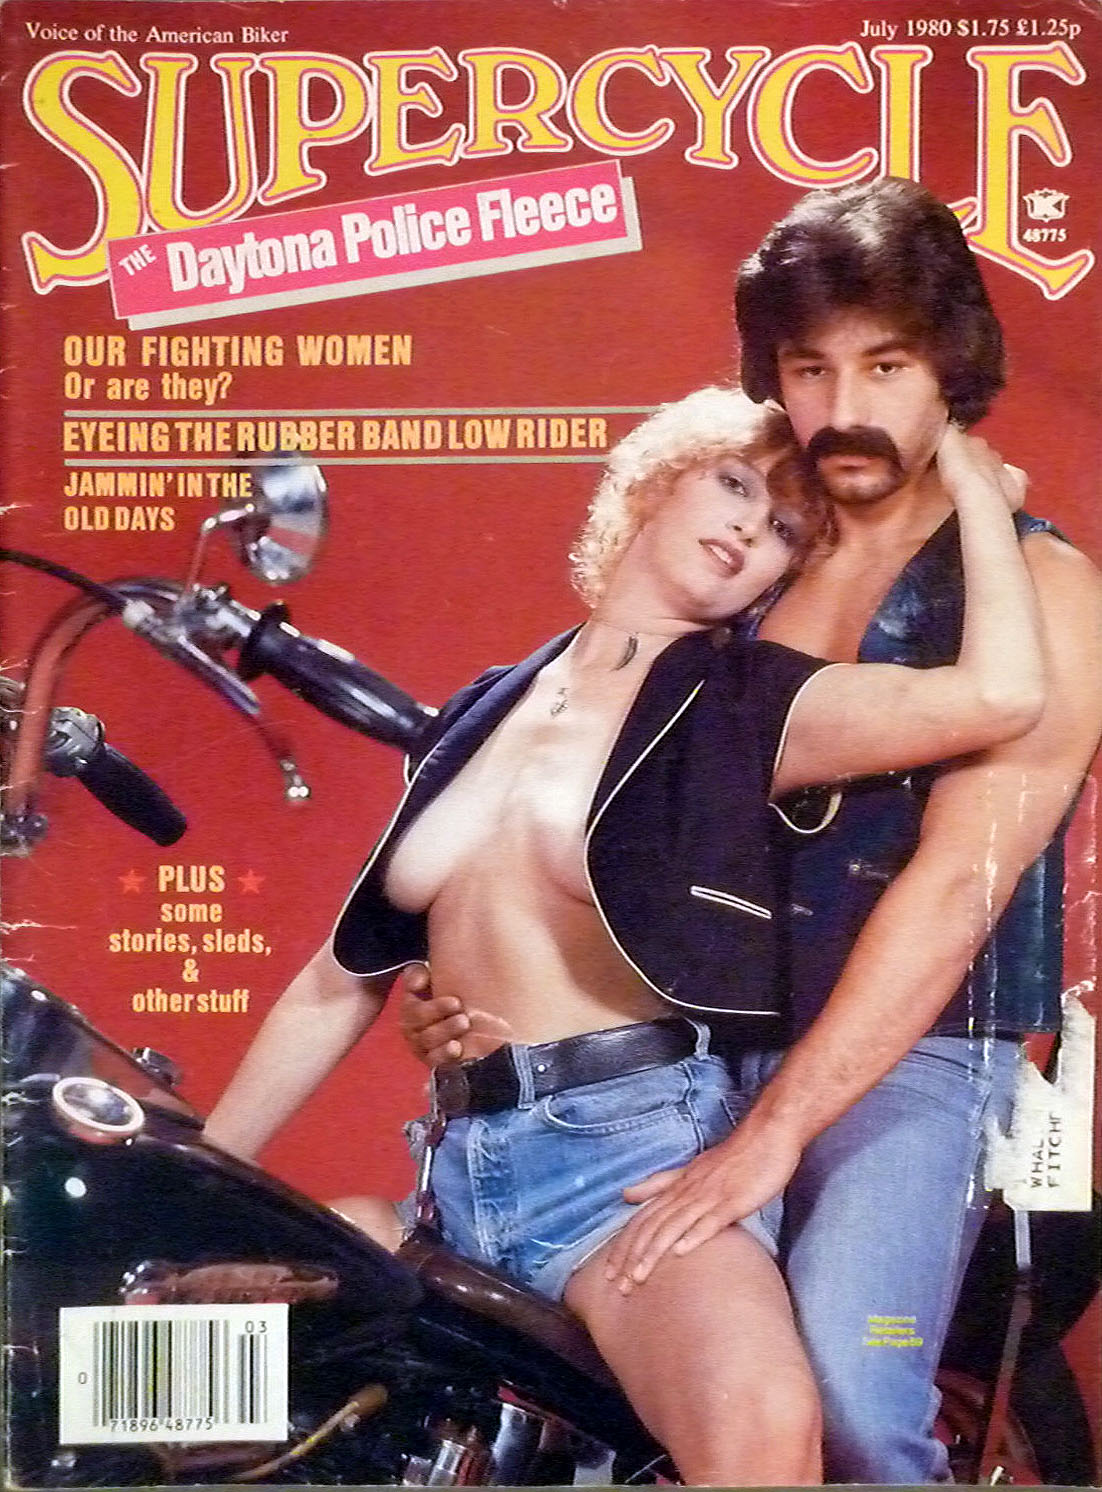 vintage-biker-magazines-31